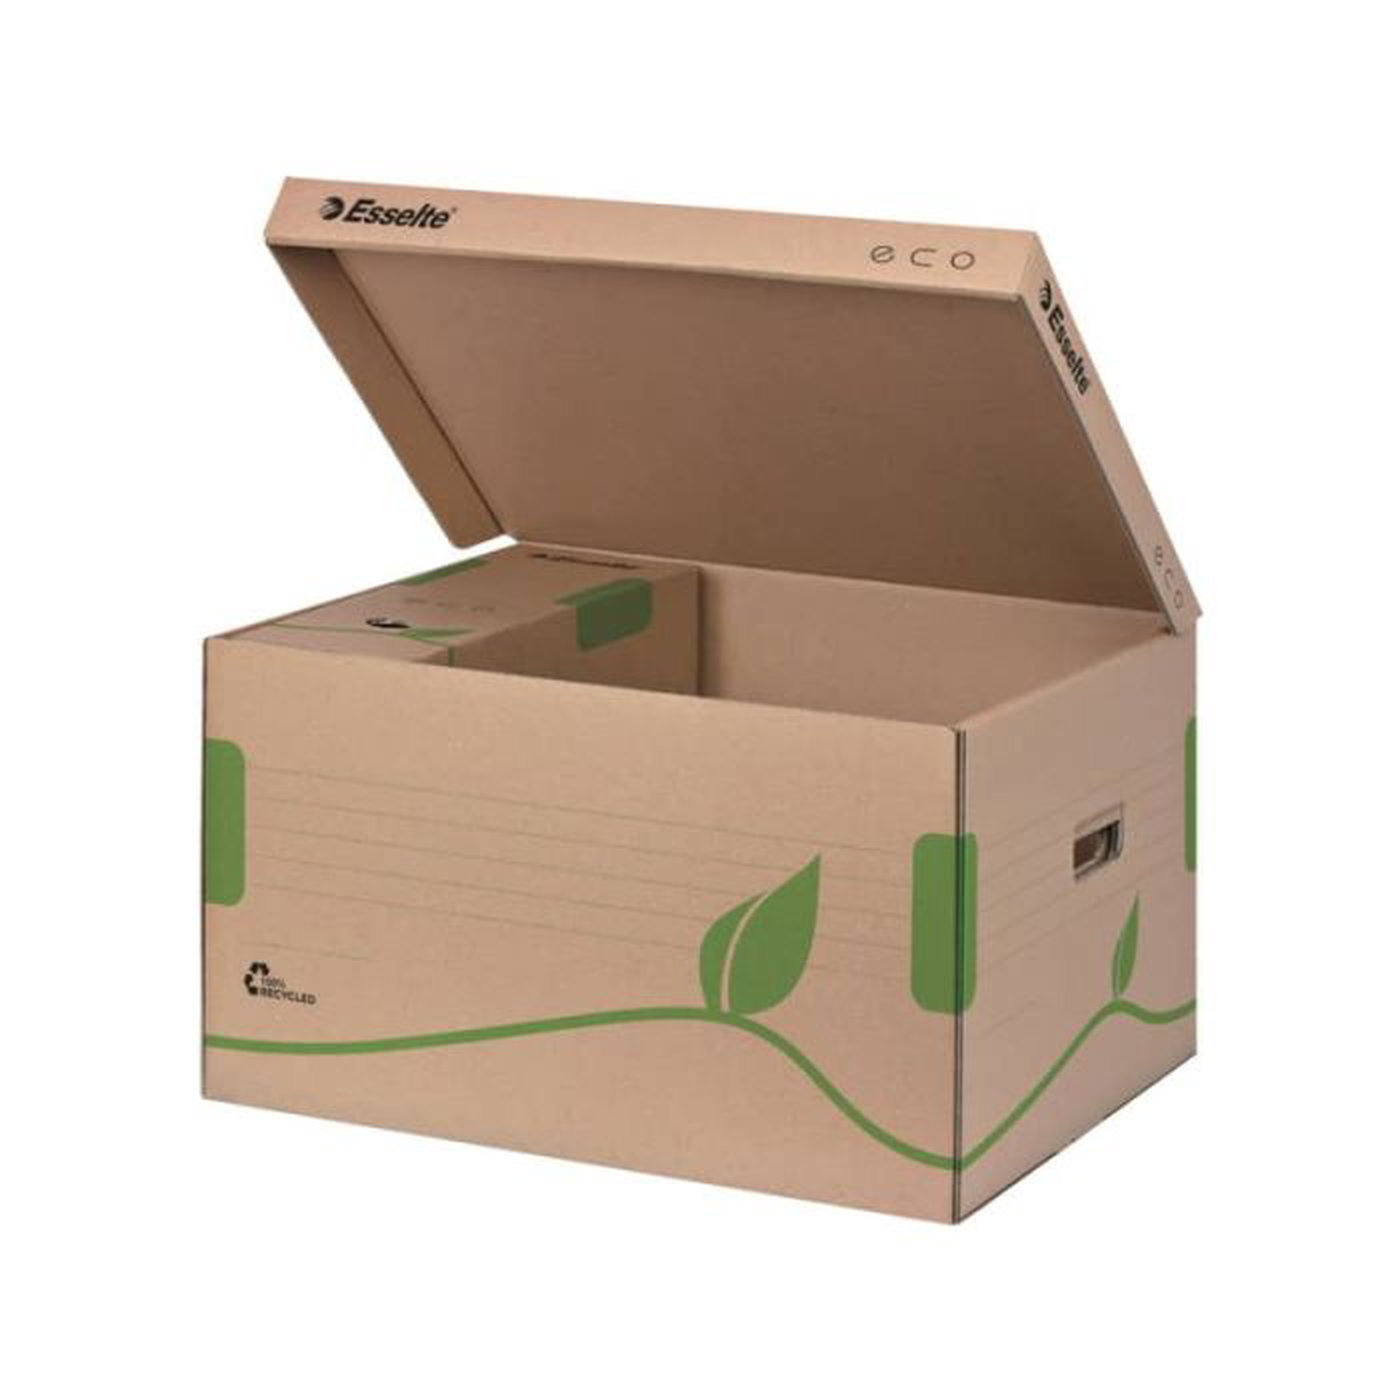 Scatola archivio Esselte ECOBOX container per Boxy 80/100 avana/verde  34,5x24,2x43,9 cm - 623918 a soli 6.28 € su